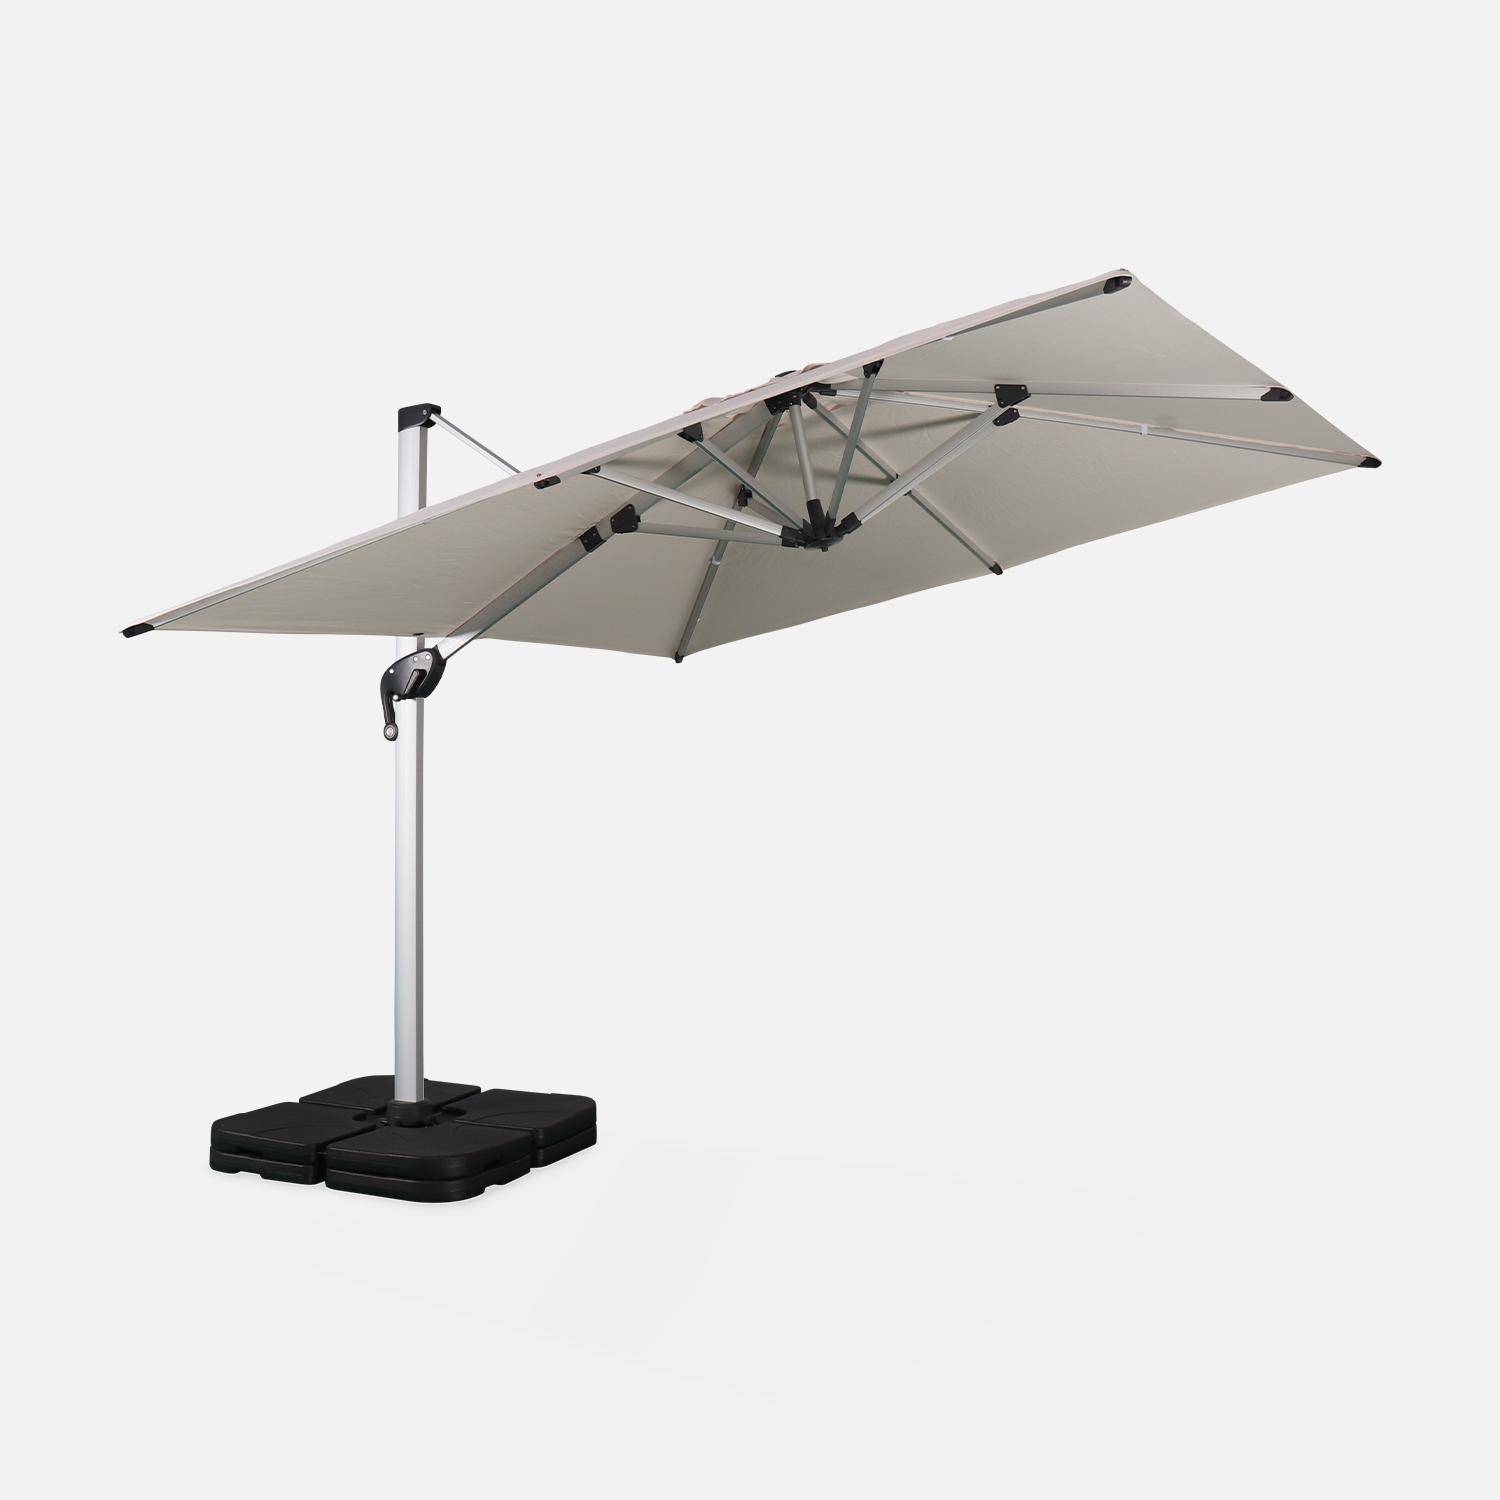 Parasol déporté haut de gamme carré 3x3m – PYLA Beige – Toile Sunbrella fabriquée en France par Dickson , structure en aluminium anodisé, rotatif, housse de protection,sweeek,Photo3